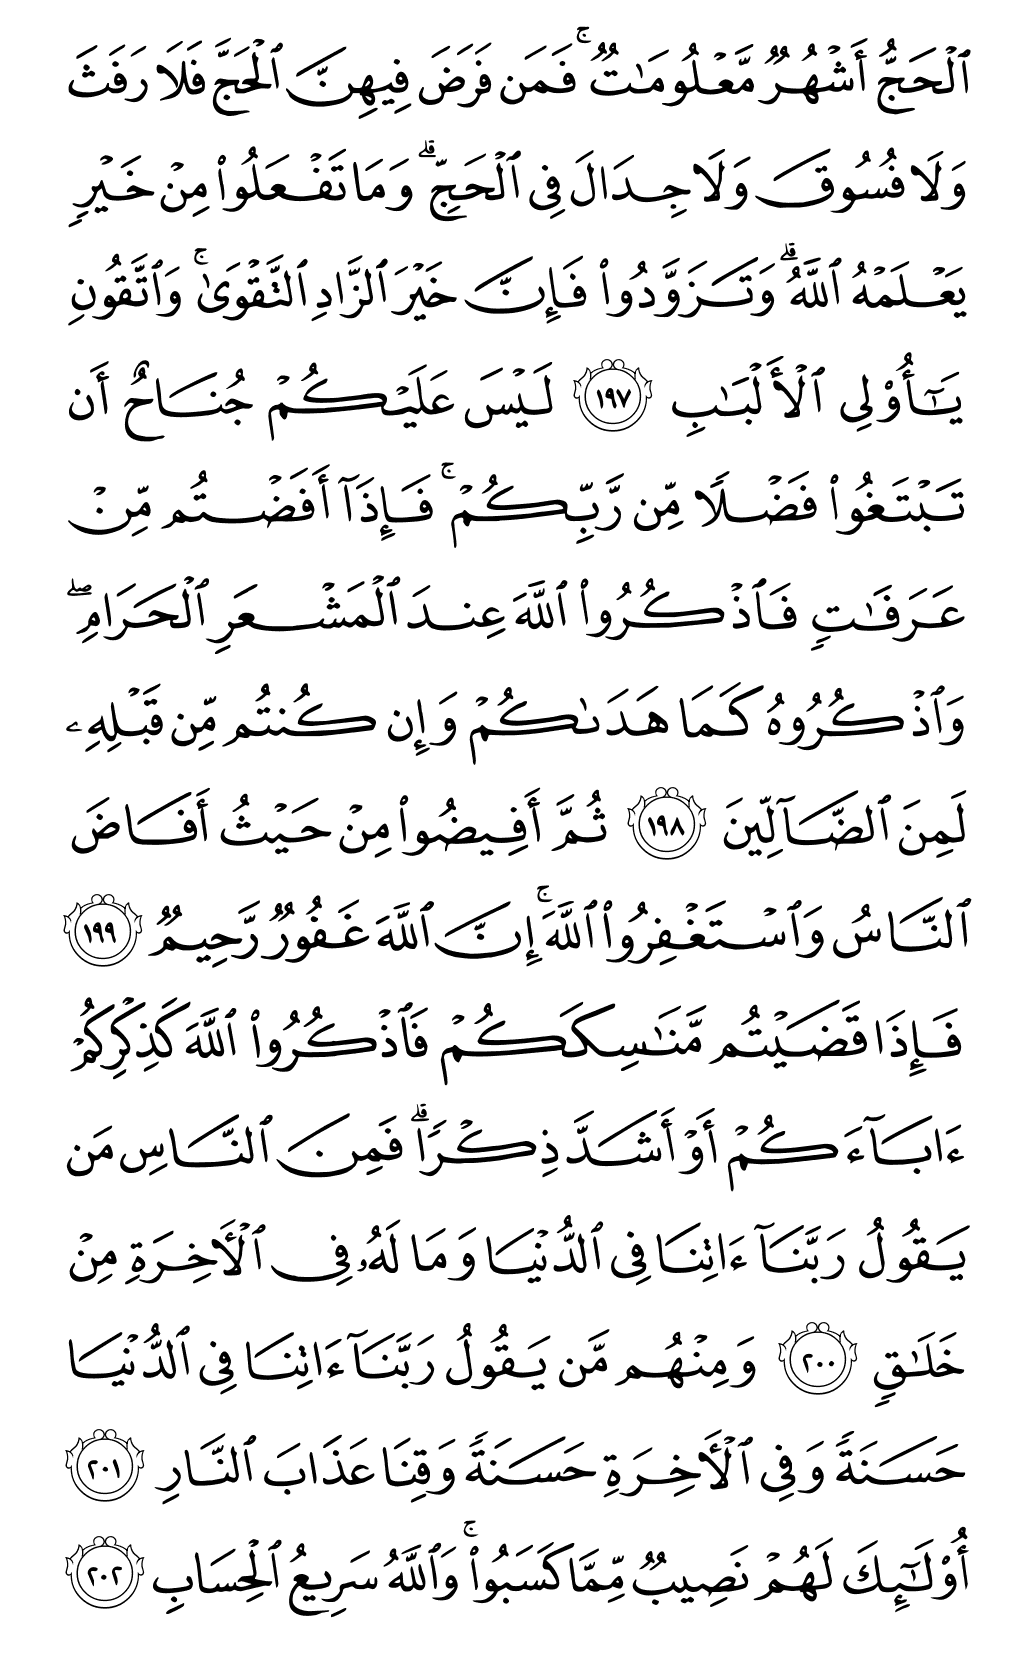 الصفحة رقم 31 من القرآن الكريم